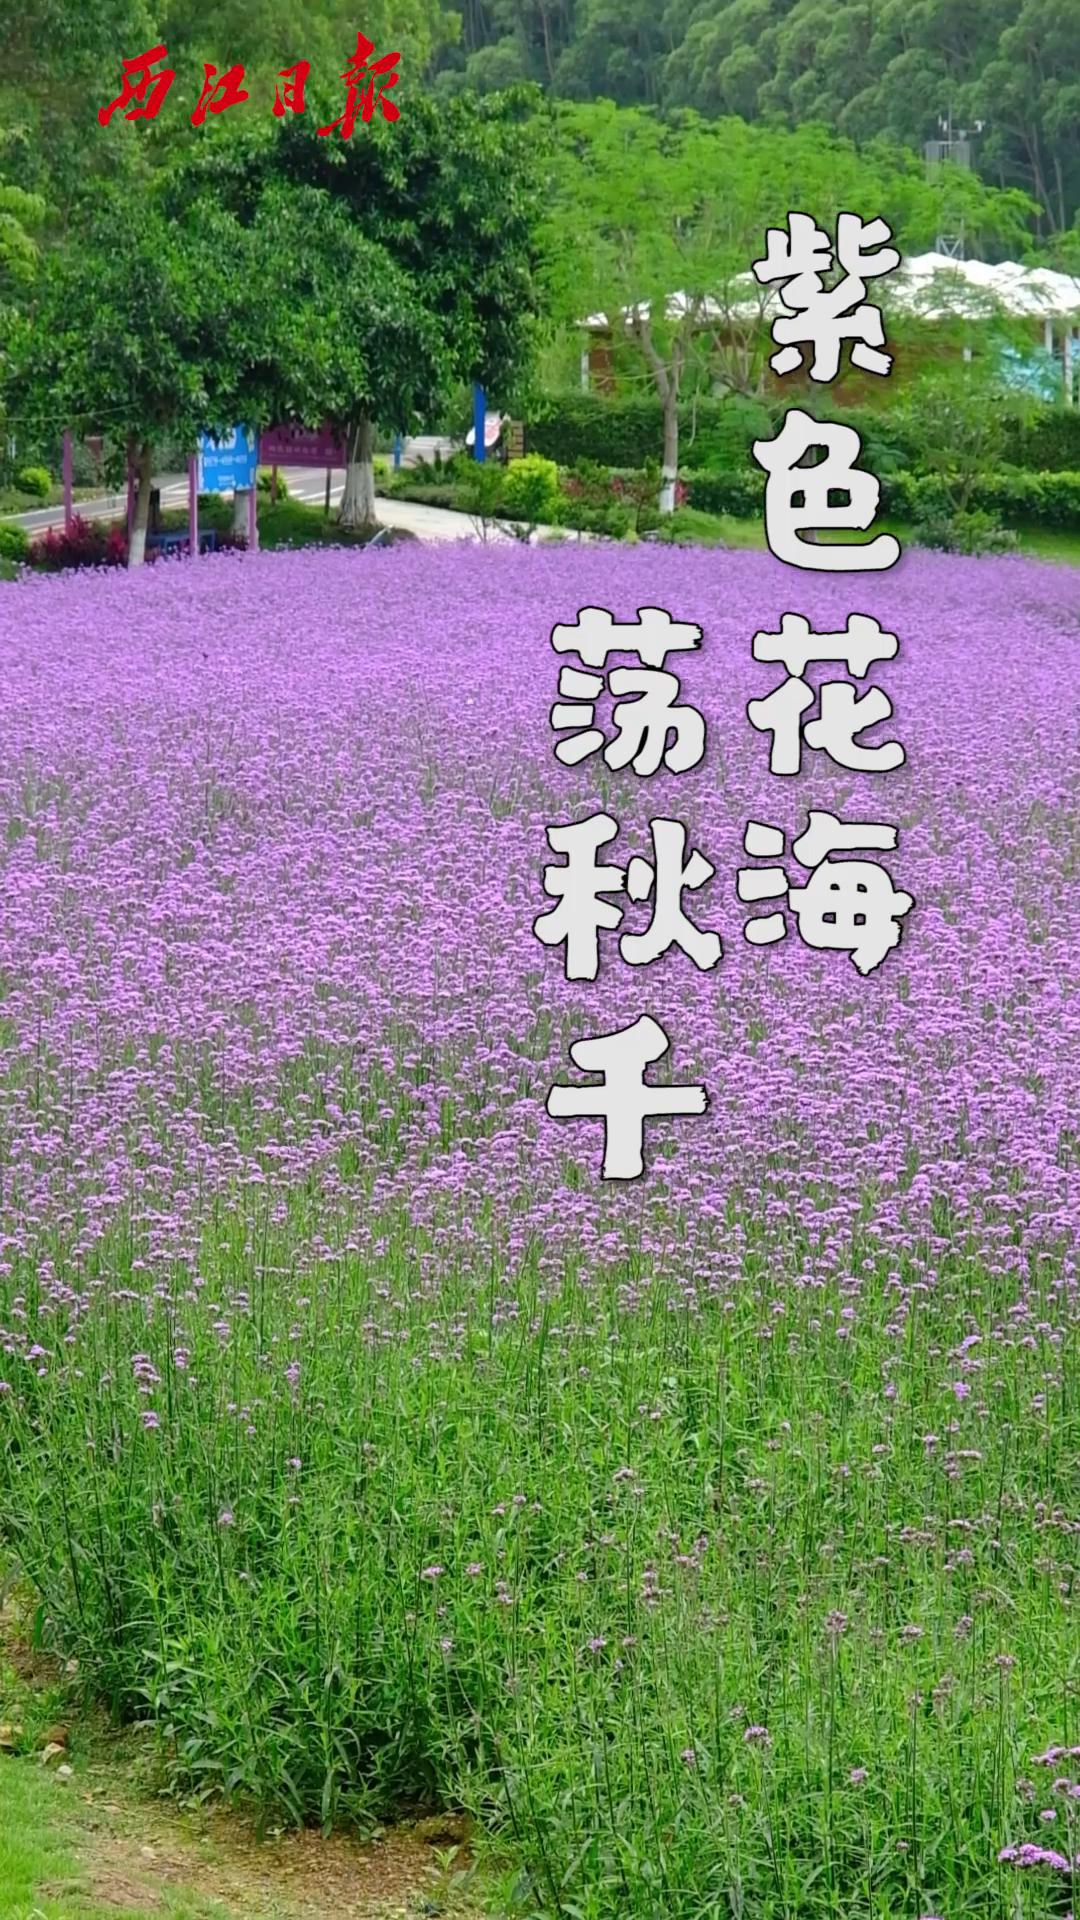 紫色花海絢麗綻放